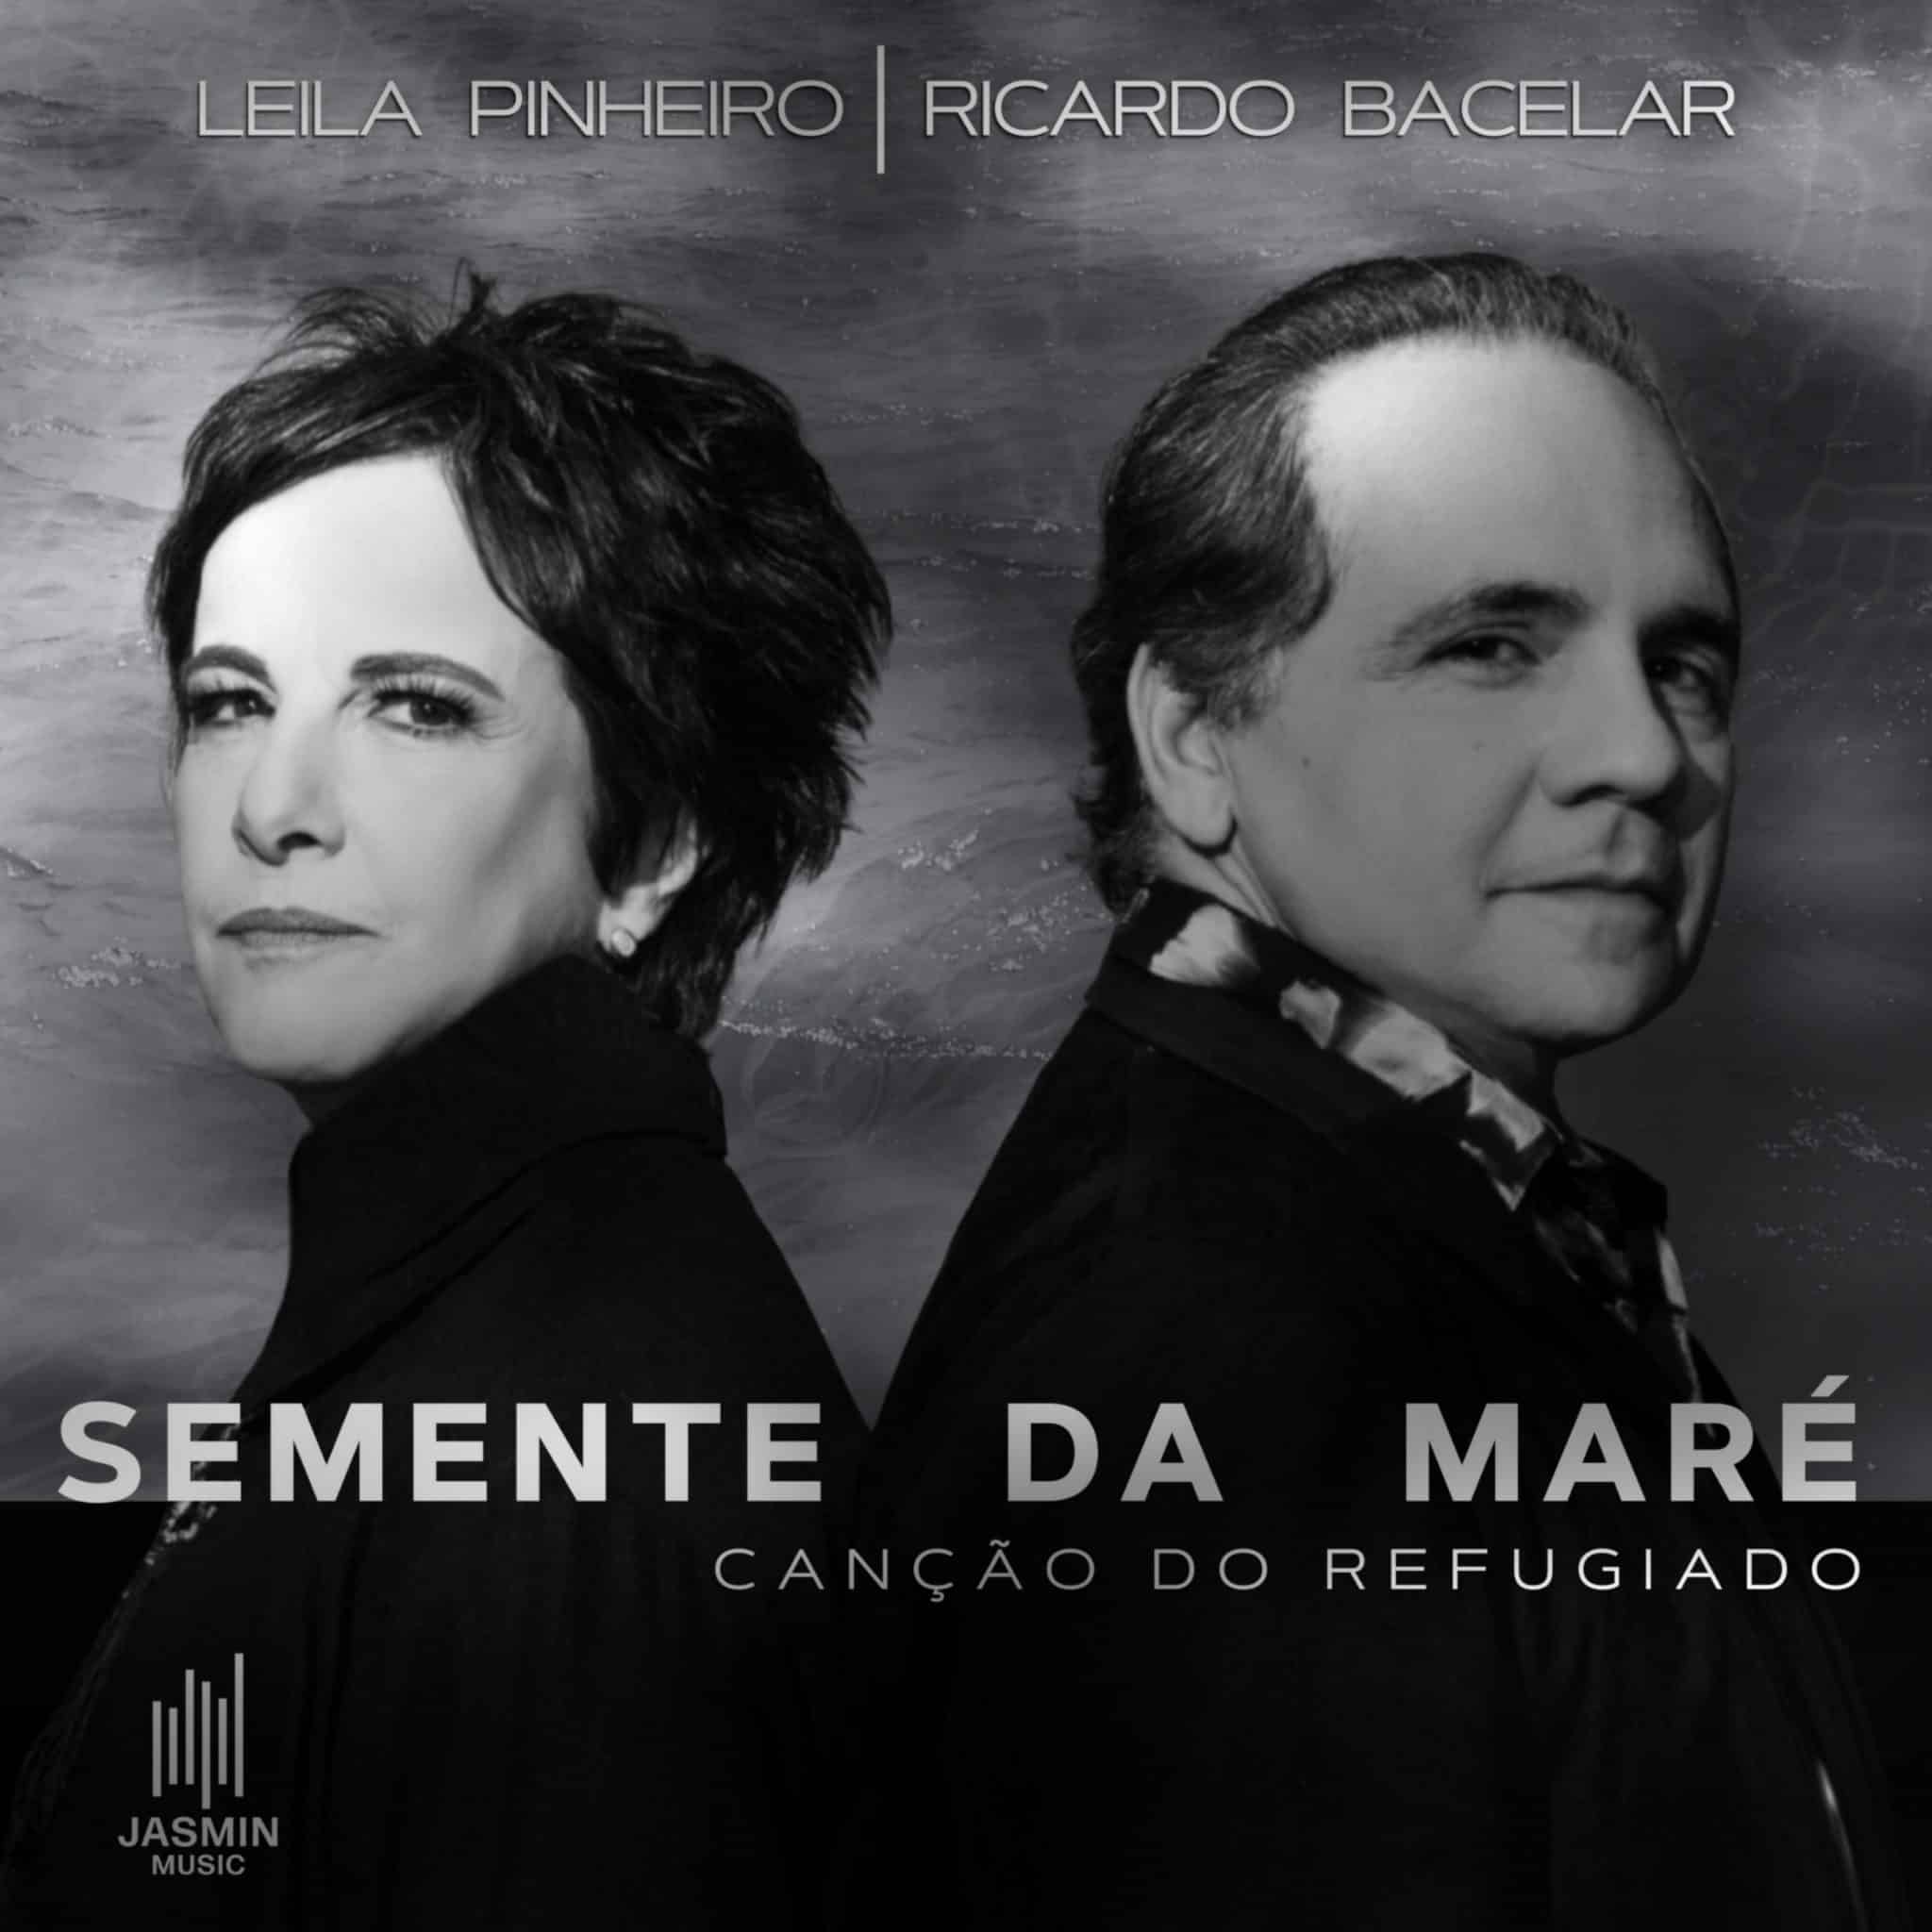 revistaprosaversoearte.com - Leila Pinheiro e Ricardo Bacelar resgatam canção de Guilherme Arantes